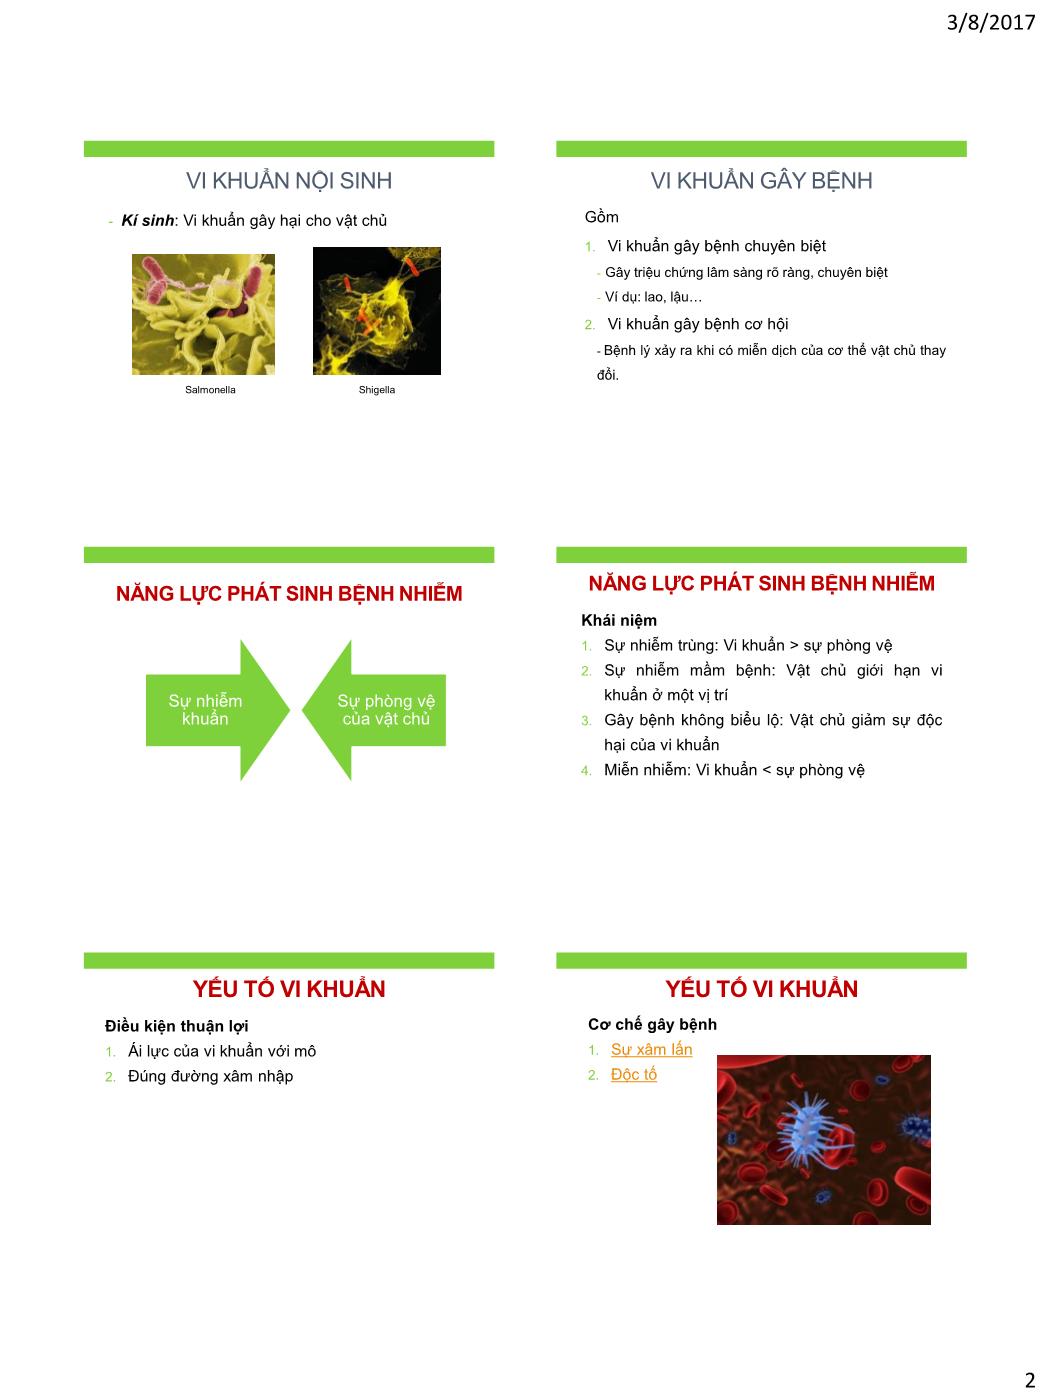 Bài giảng Vi sinh vật - Bài: Liên hệ vật chủ - Vi khuẩn trang 2